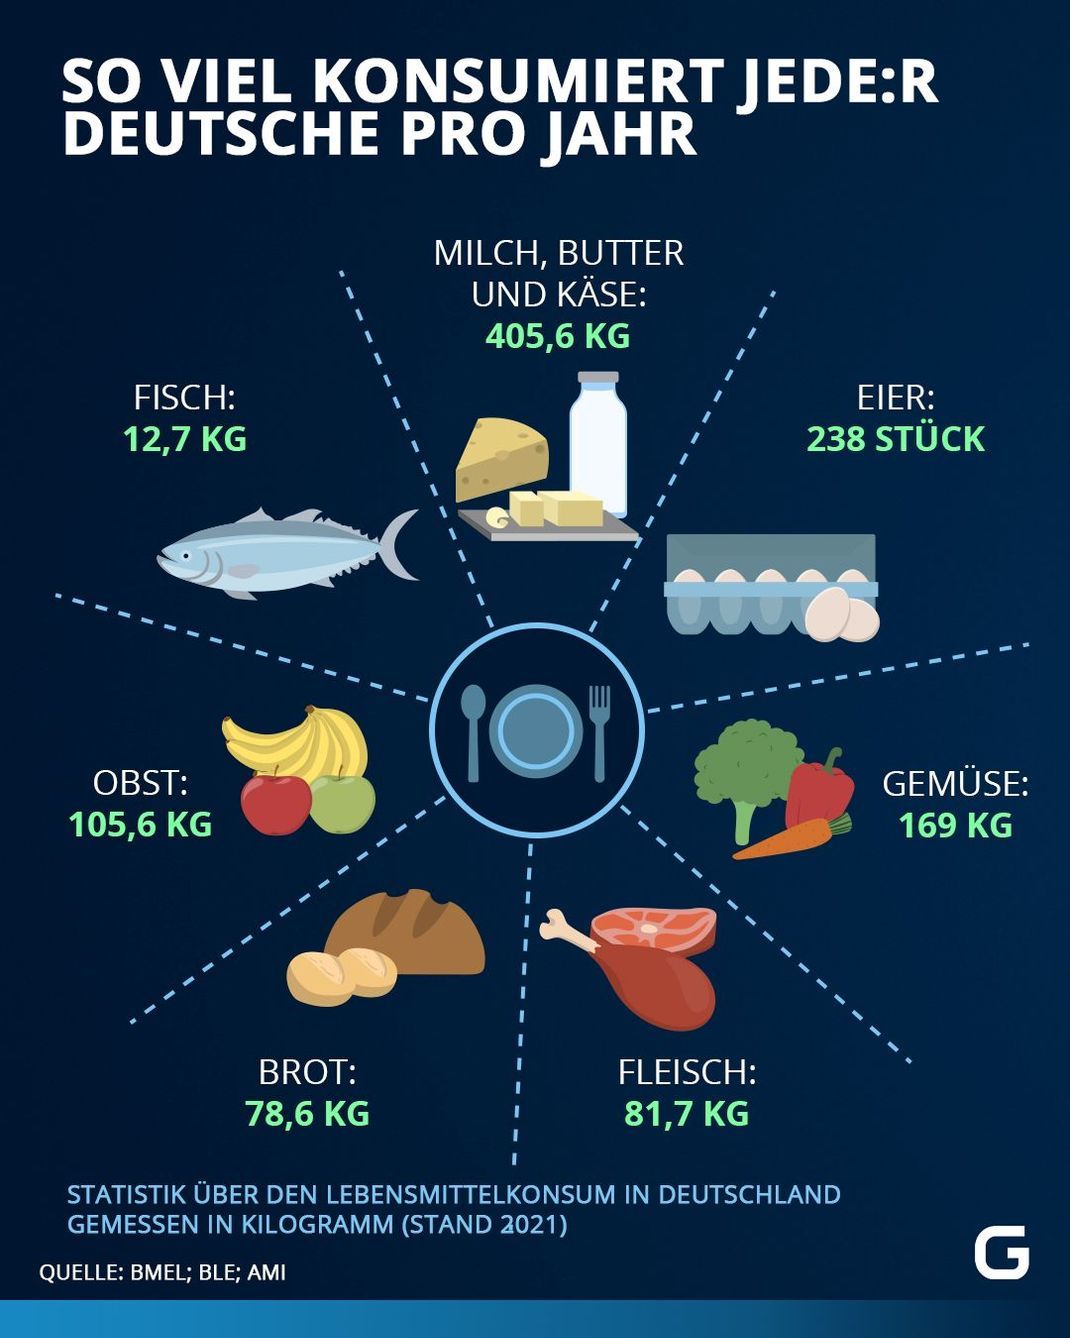 Statistik über den Lebensmittelkonsum in Deutschland gemessen in Kilogramm im Jahr 2021